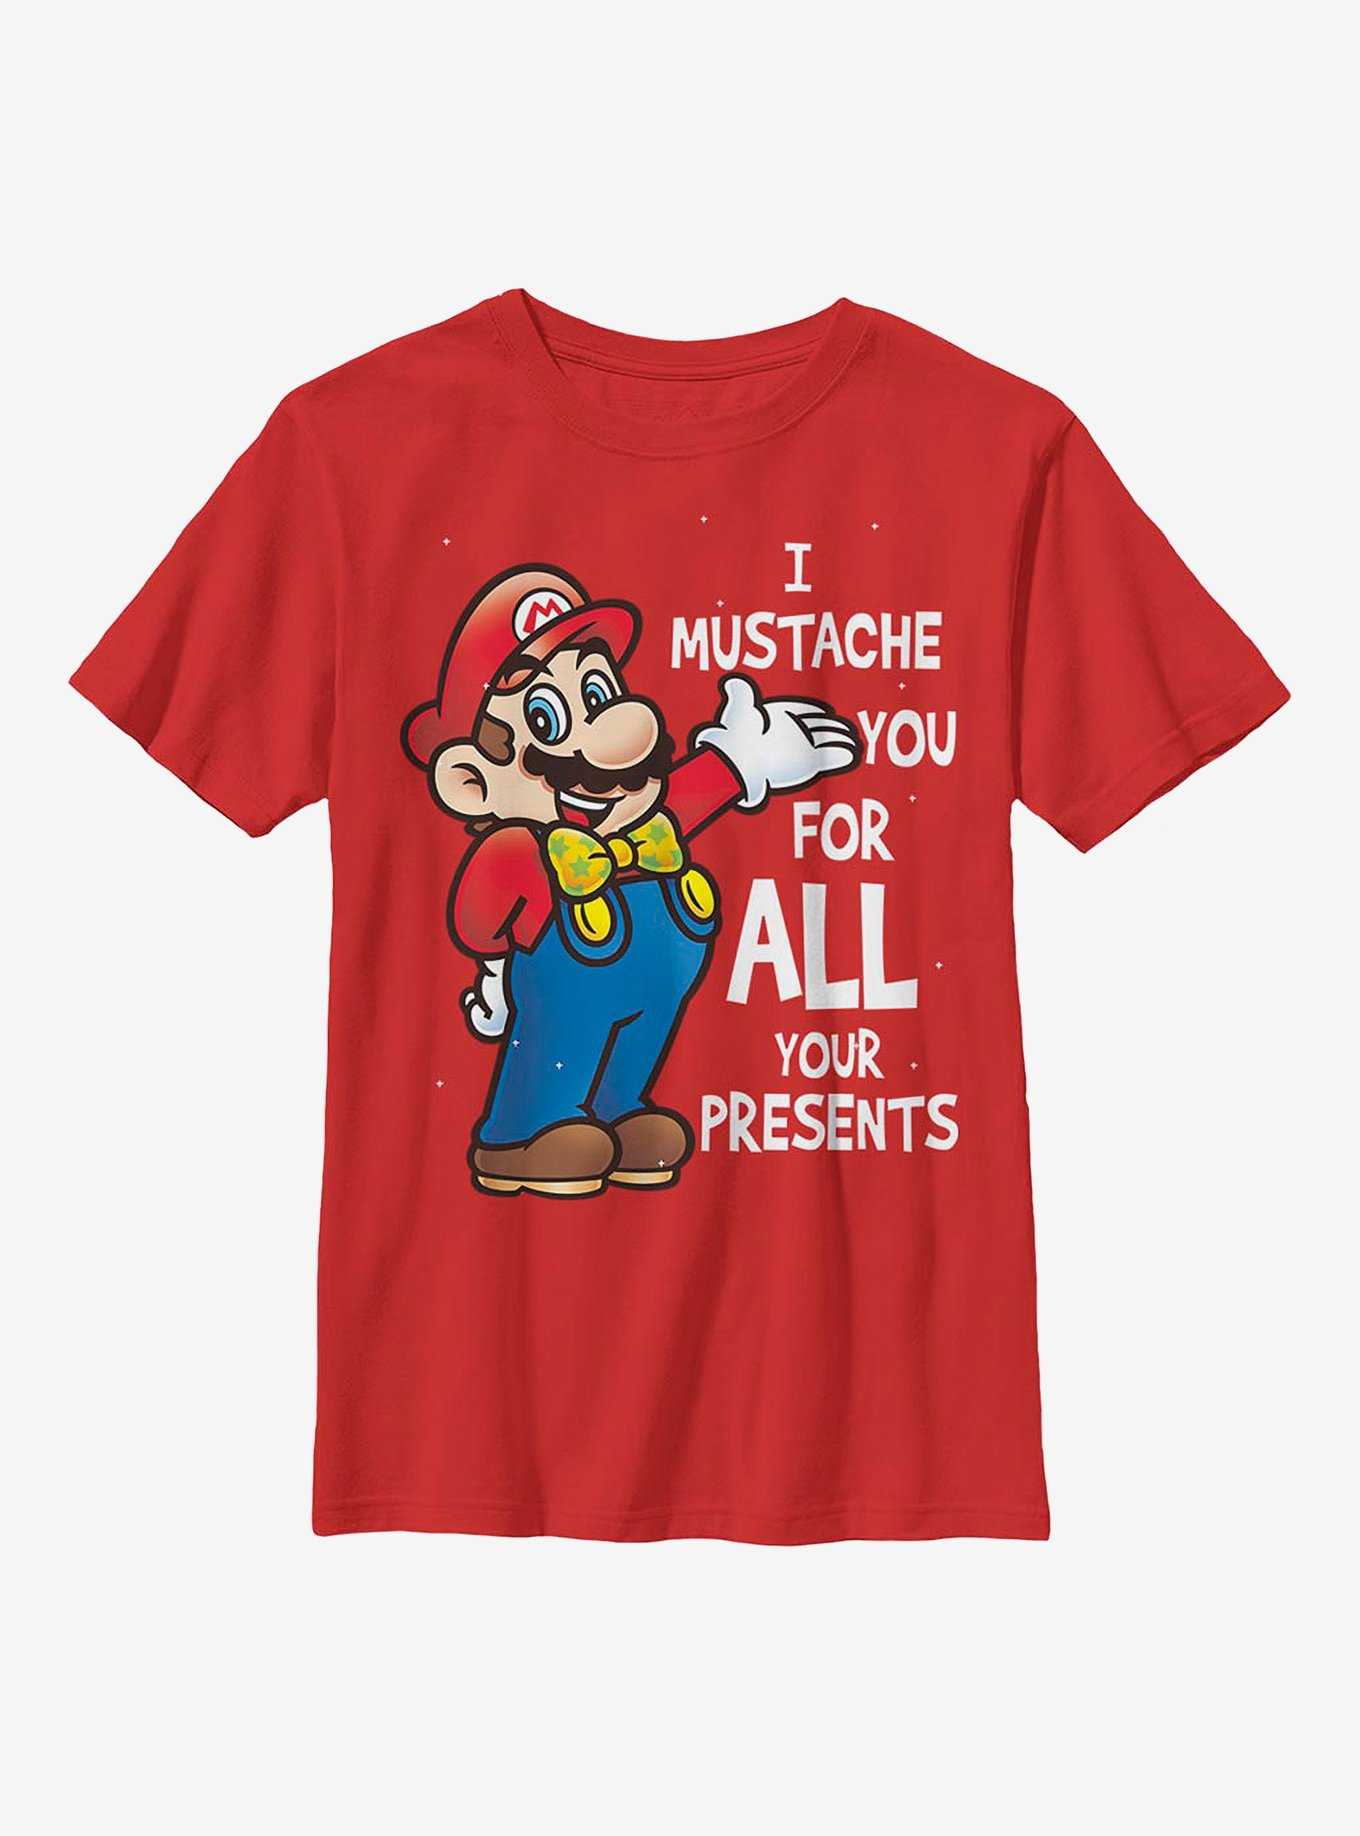 Super Mario All Presents Youth T-Shirt, , hi-res